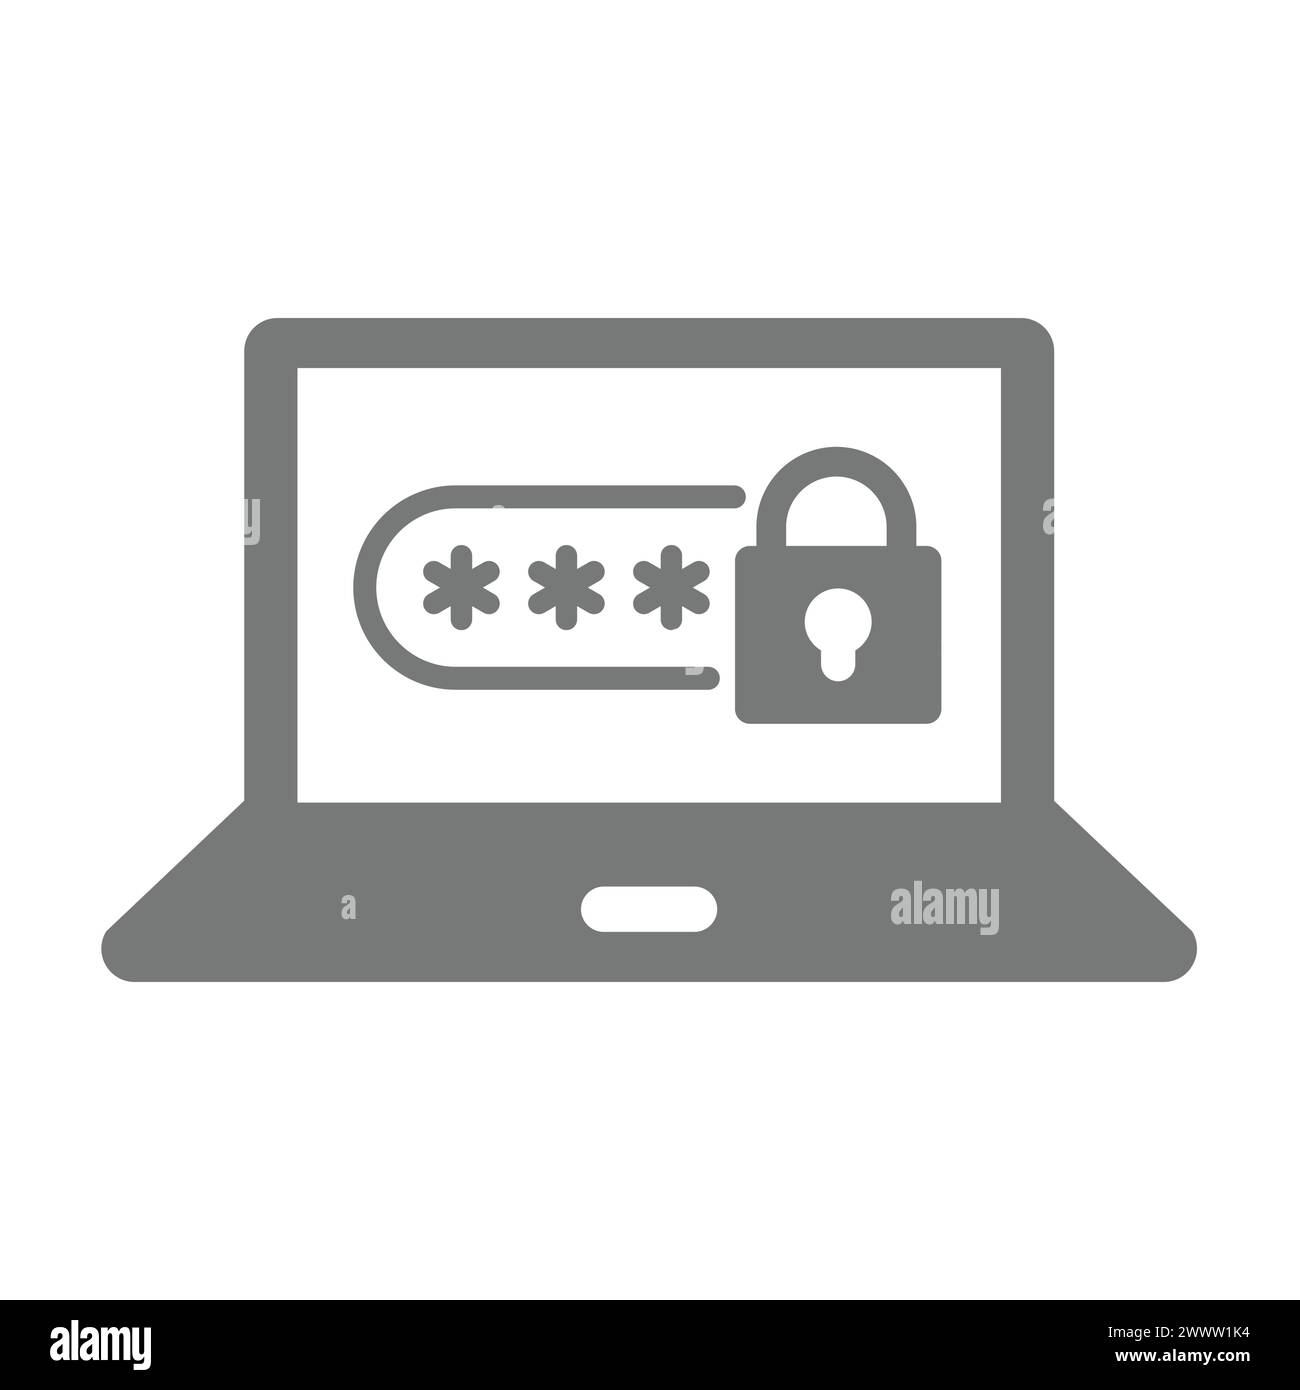 Vettore di caratteri mascherati per laptop e password. Accesso protetto e accesso con icona a forma di lucchetto. Illustrazione Vettoriale